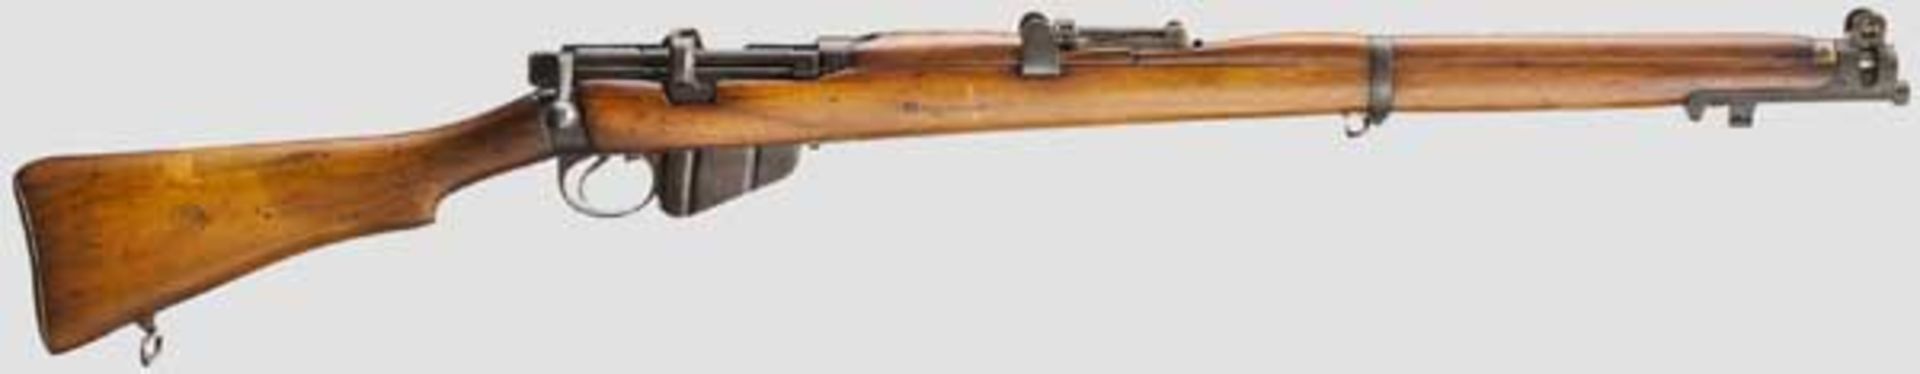 Enfield (SMLE) Rifle No. 1 Mk III* Kal. .303 brit., Nr. 52231. Nummerngleich. Lauf eingefettet.